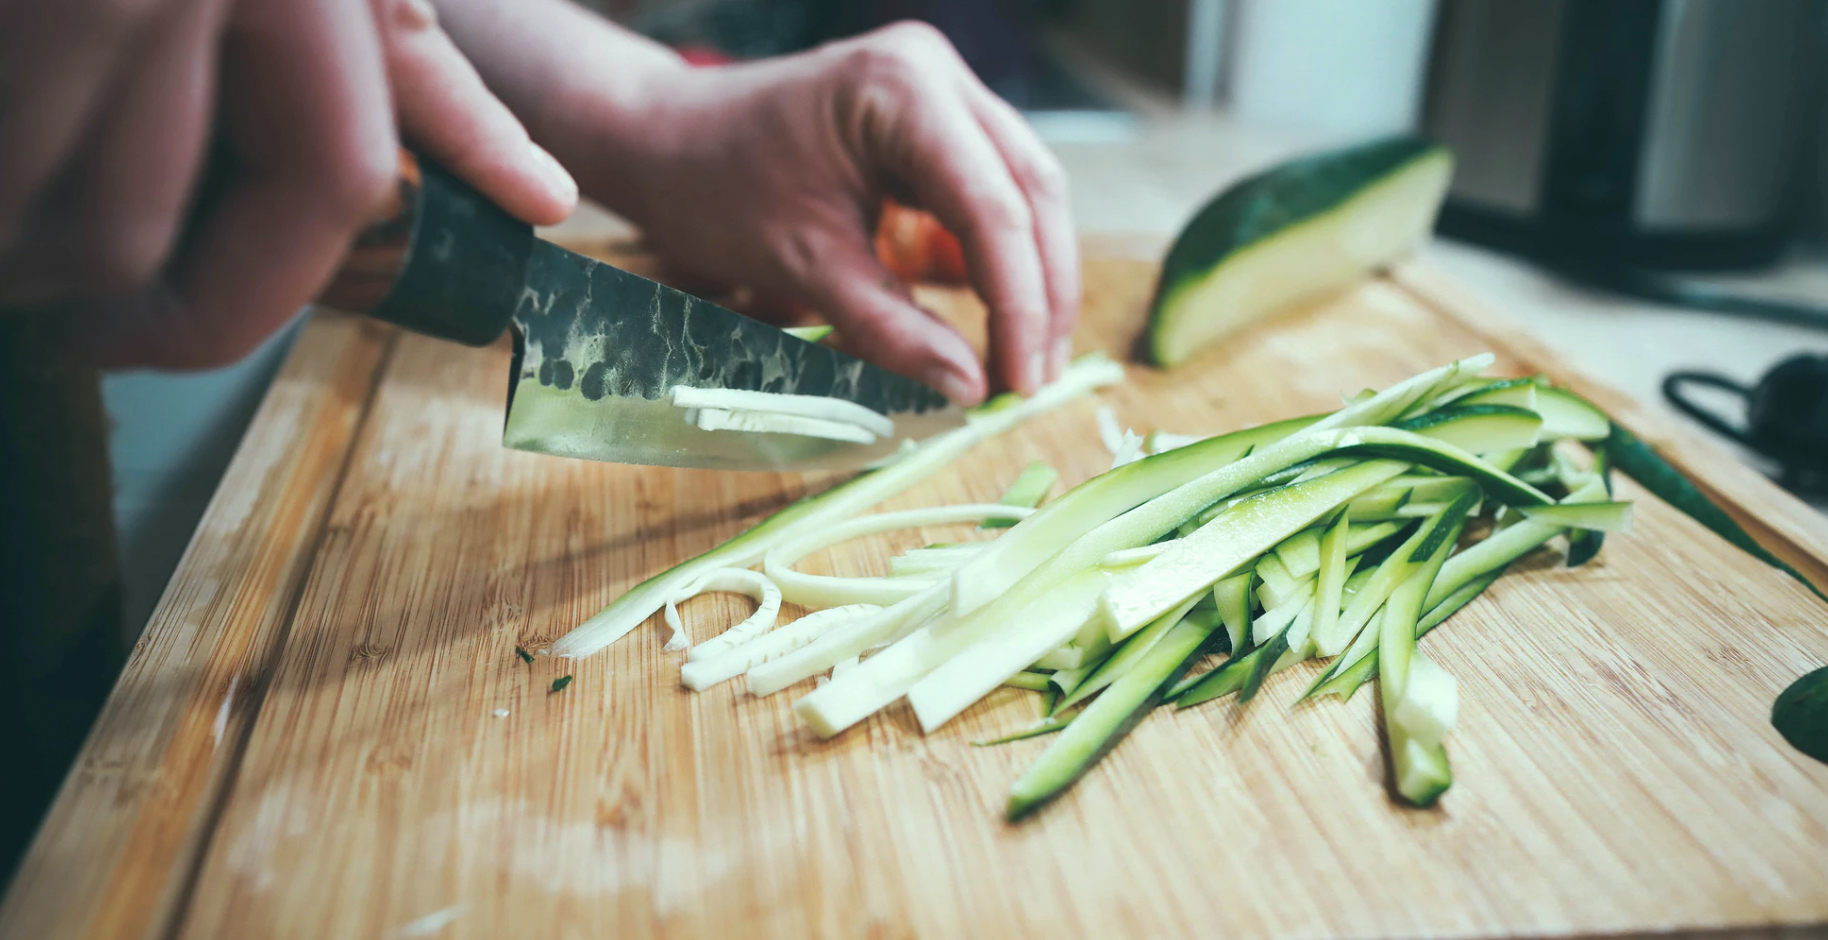 Chopping vegetables for a meal. Unsplash - Igor Miske